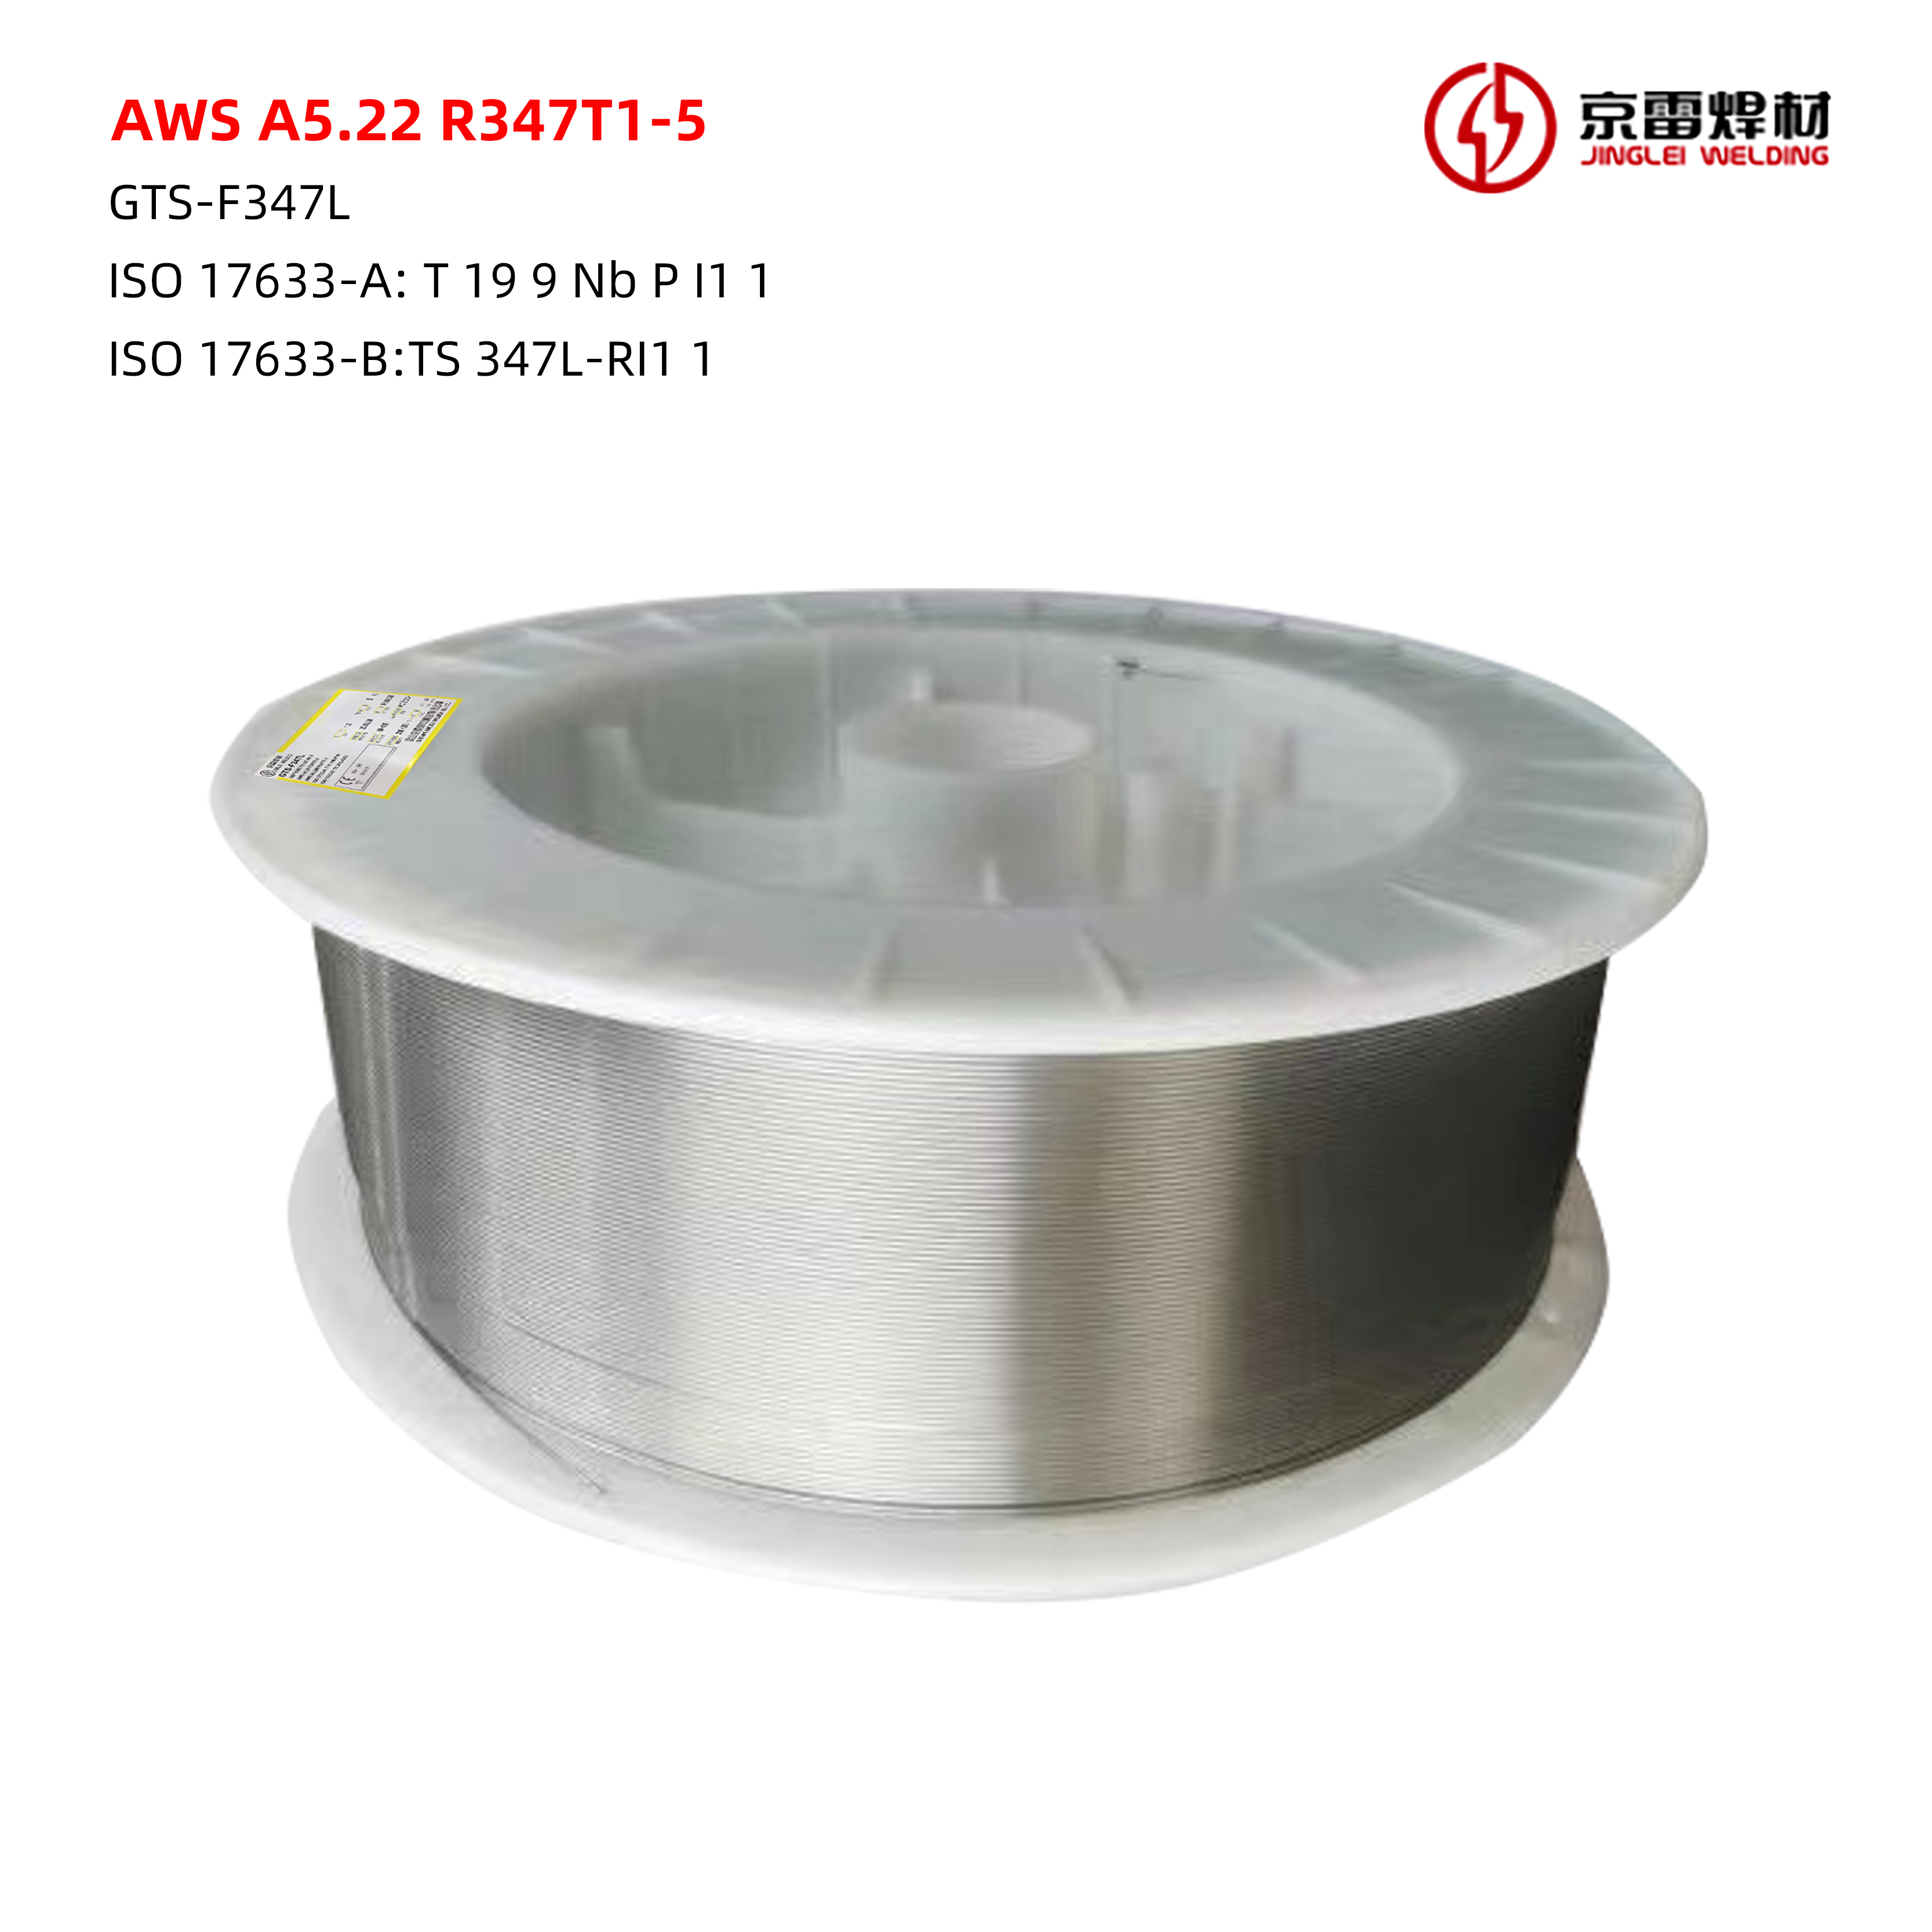 AWS A5.22 R347T1-5 01